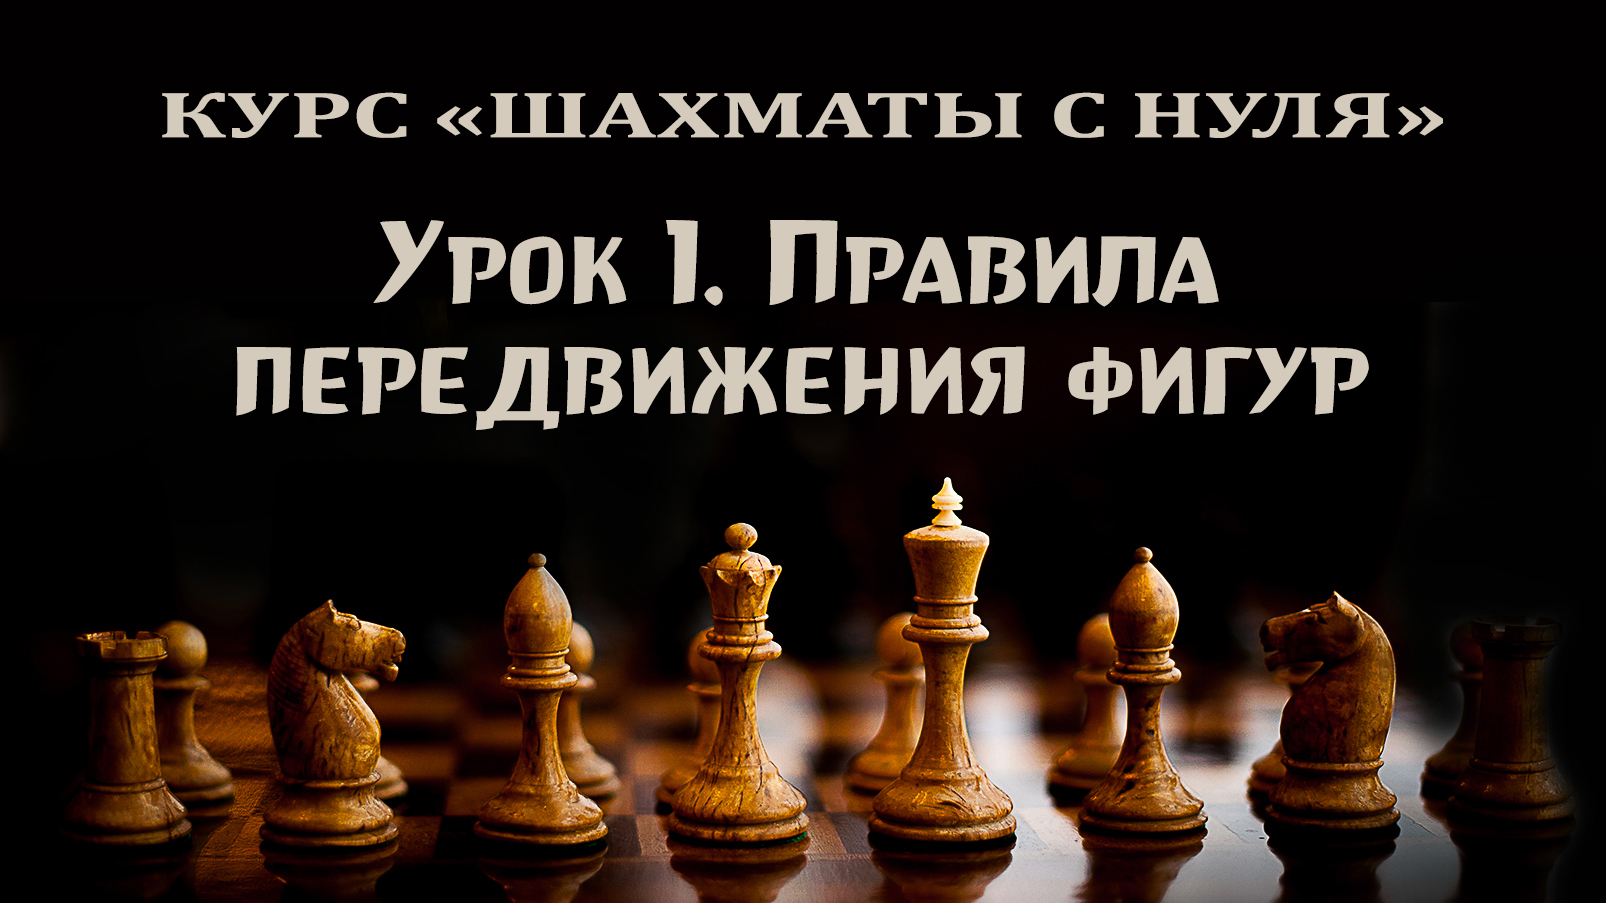 Урок 1. Правила игры в шахматы. Правила передвижения фигур